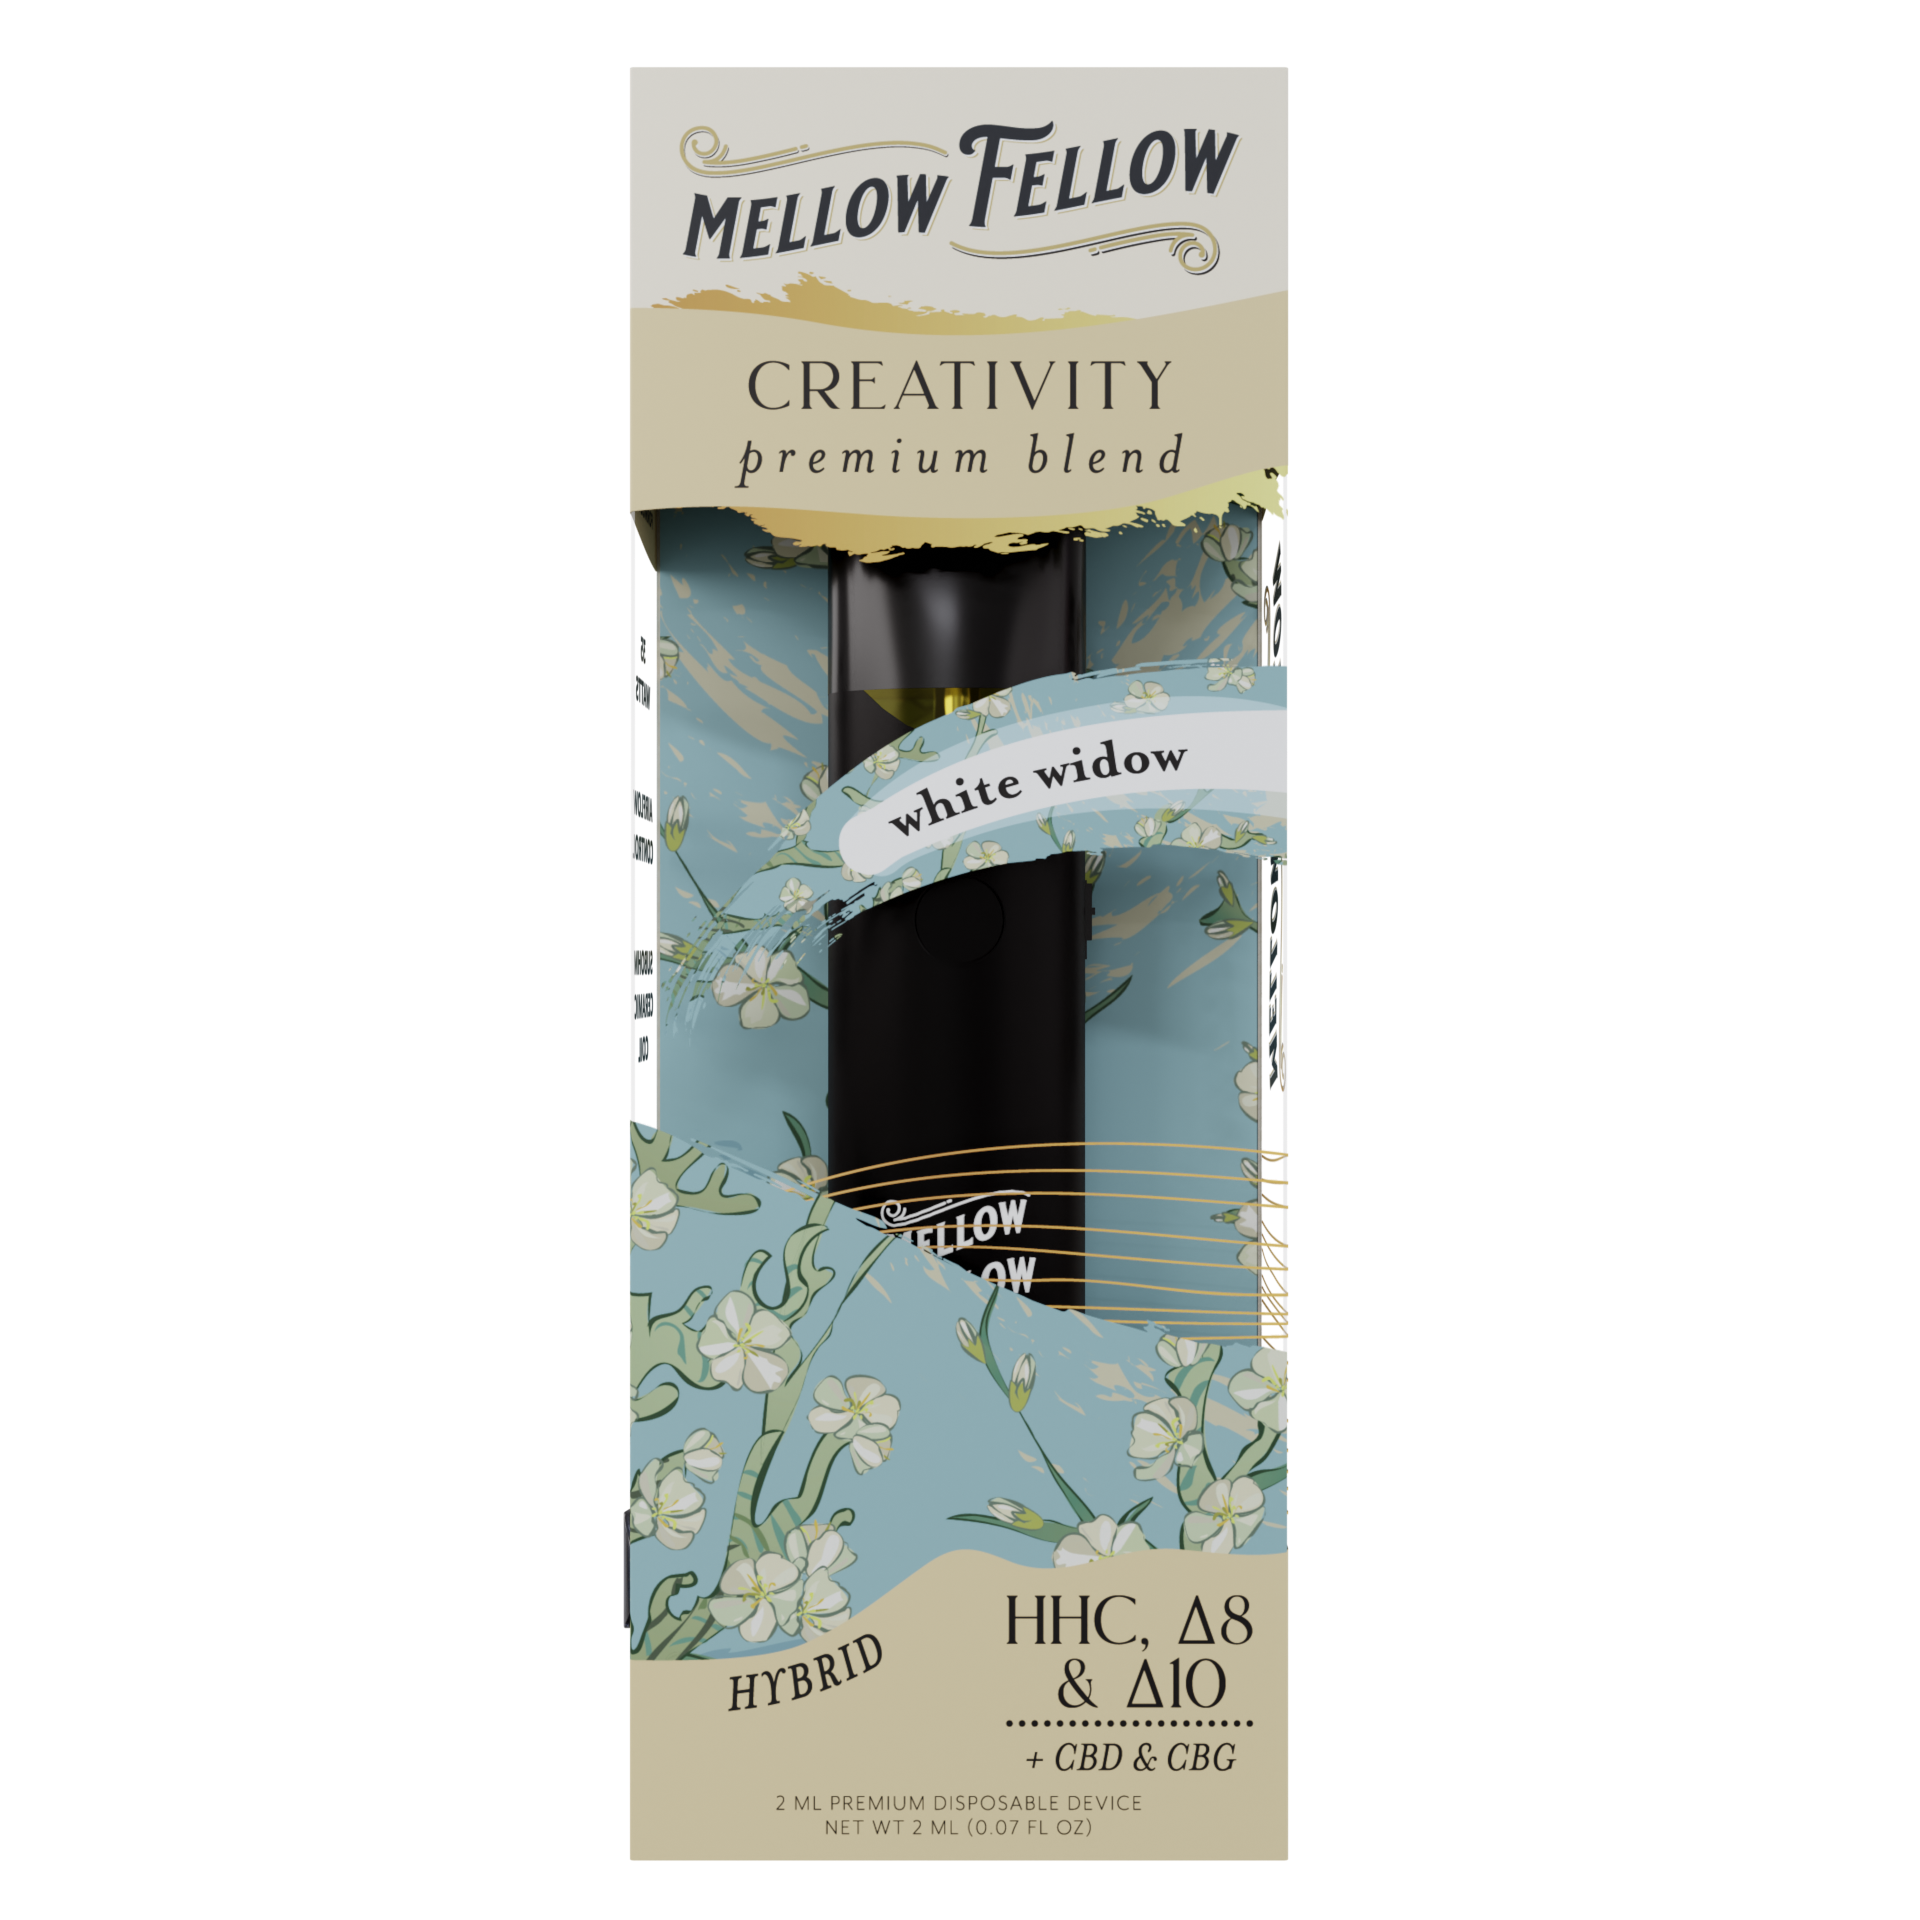 Mellow Fellow Creativity Blend 2ml Disposable Vape White Widow Best Price